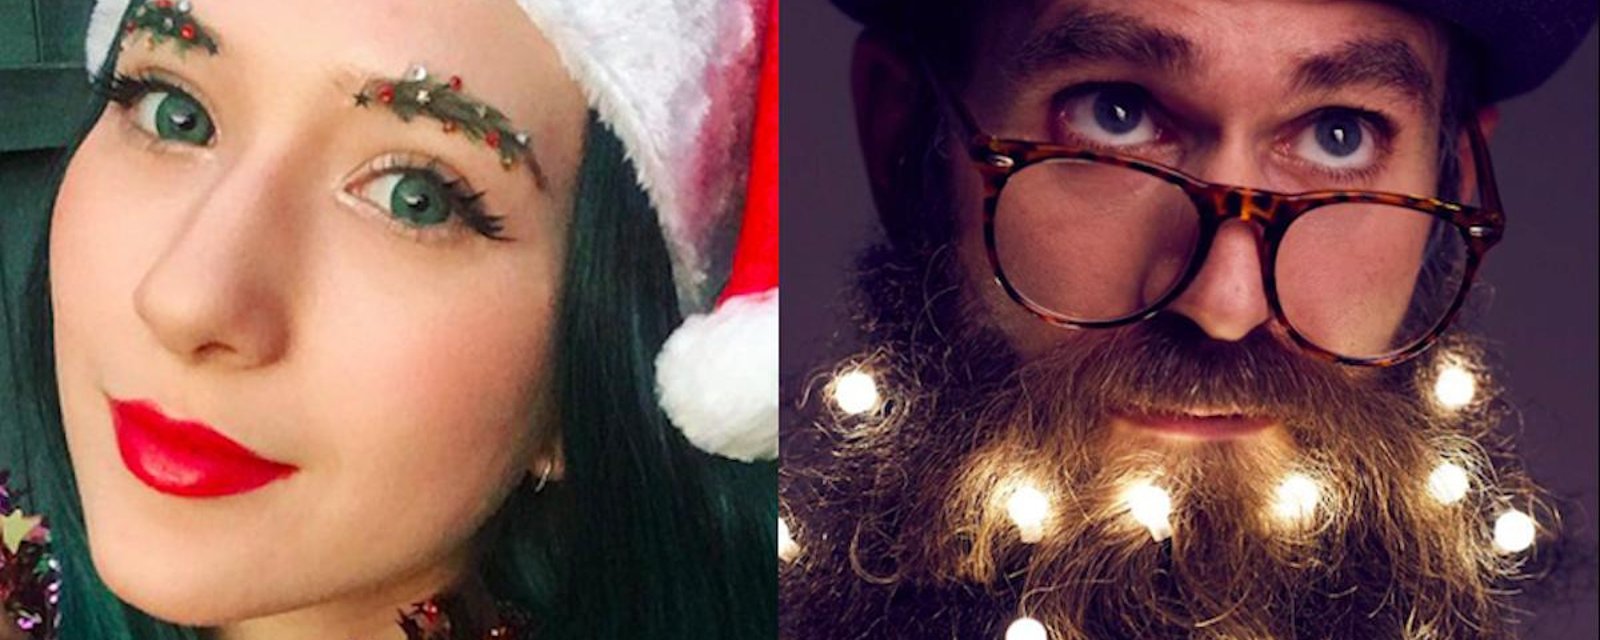 Pour les Fêtes, adopterez-vous les sourcils de Noël  ou la barbe illuminée?